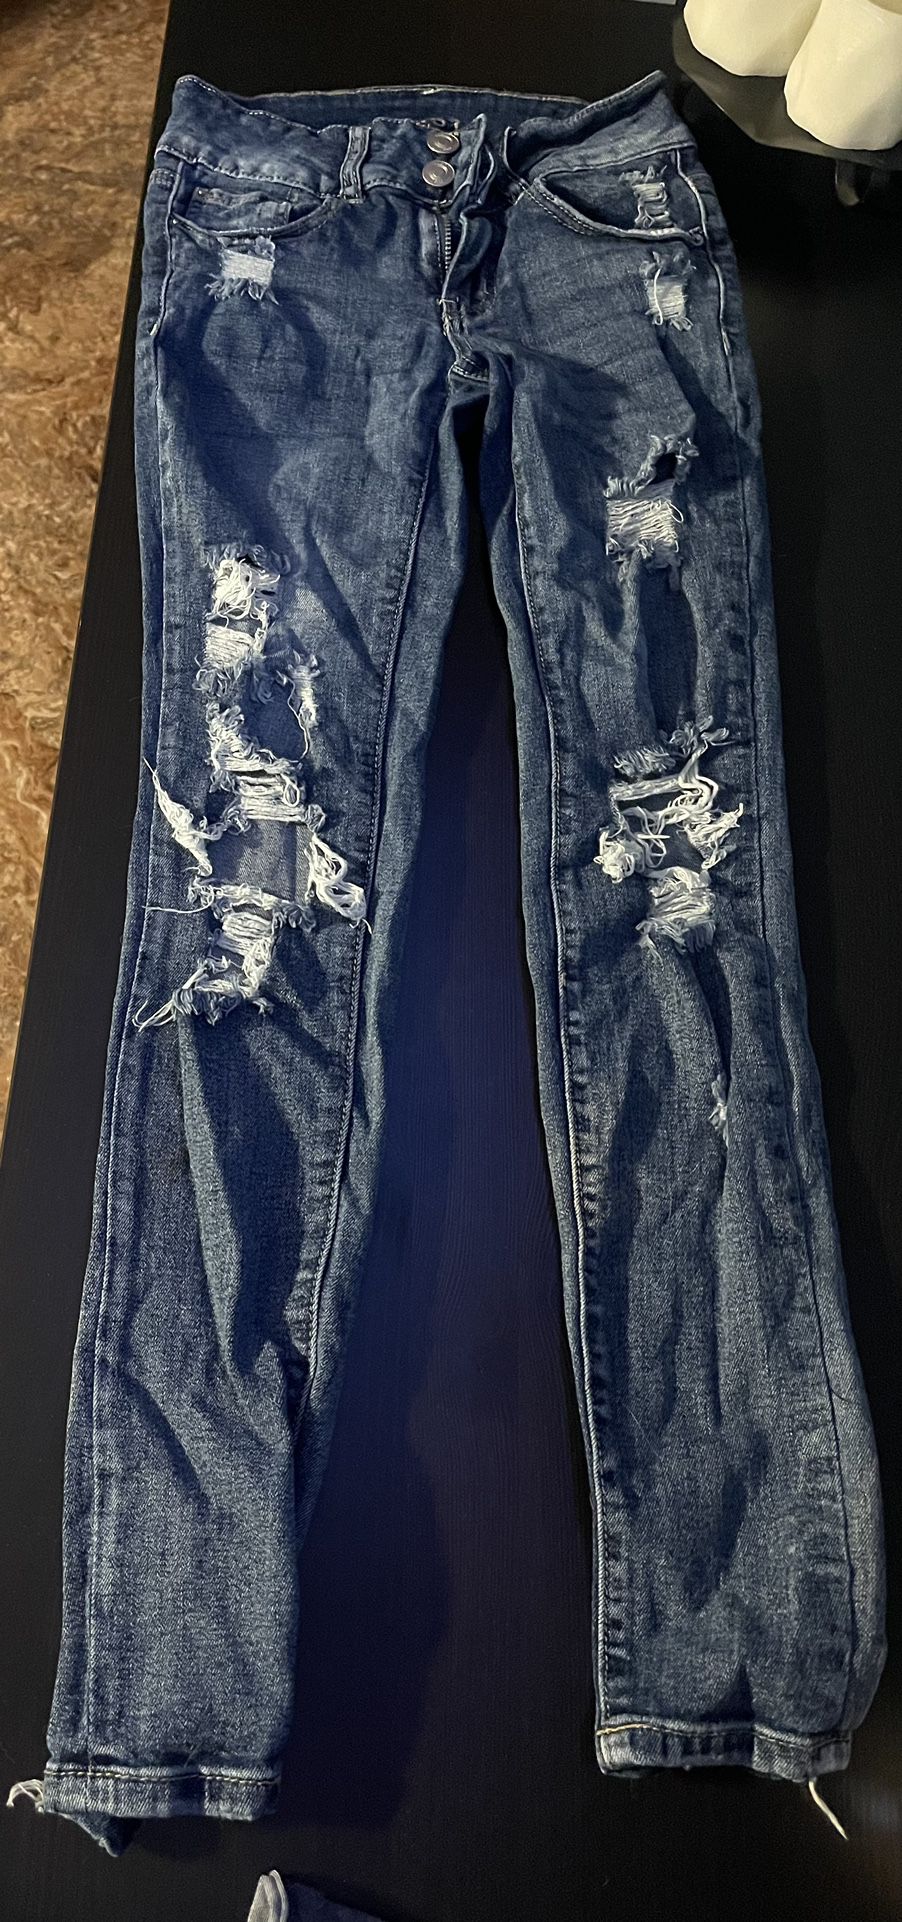 3 Pairs Of Rru 21 Jeans 